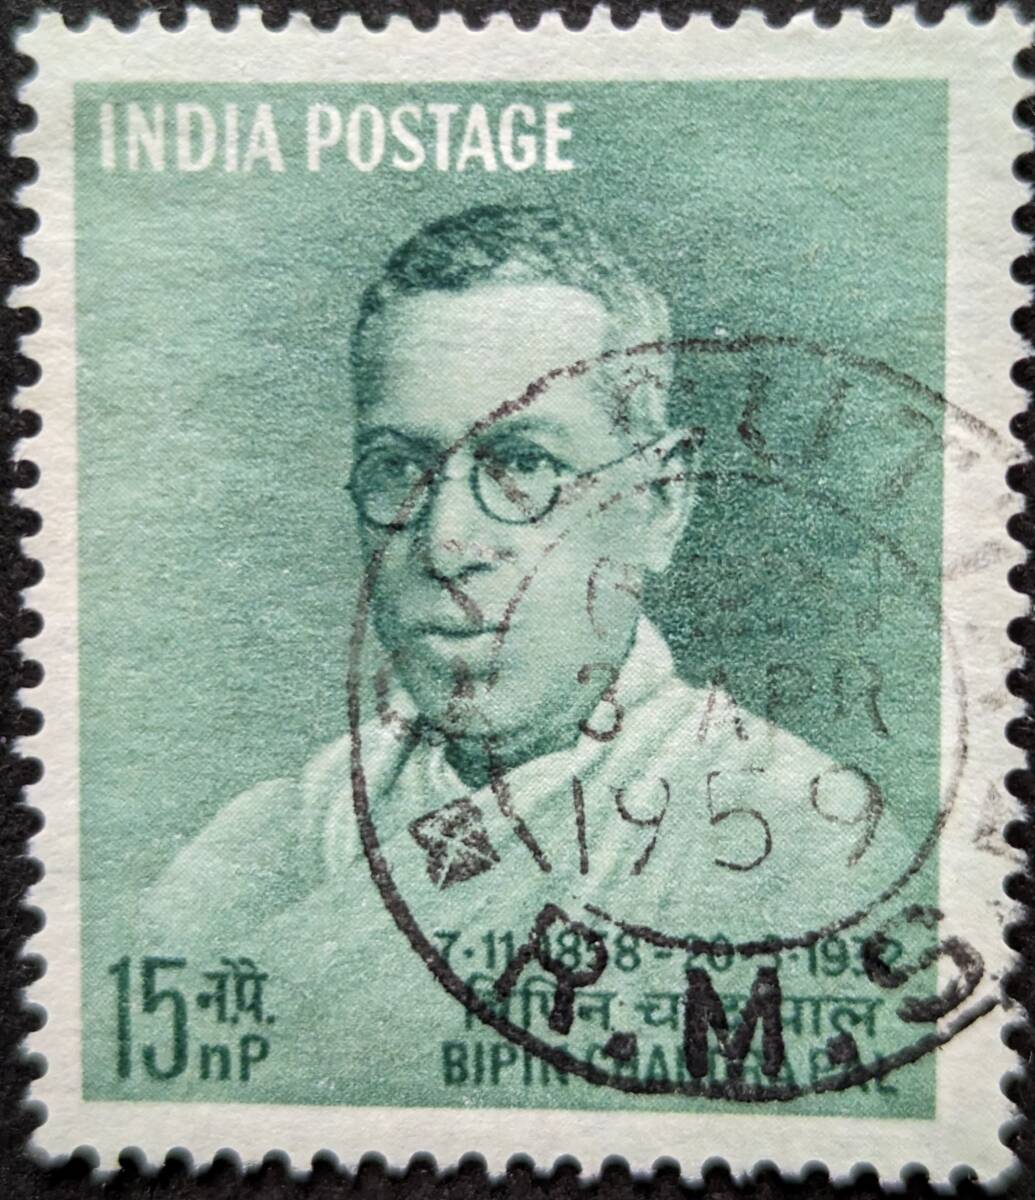 【外国切手】 インド 1958年11月07日 発行 パル、パトリオットの生誕100周年 ビピン・チャンドラ・パル 消印付き_画像1